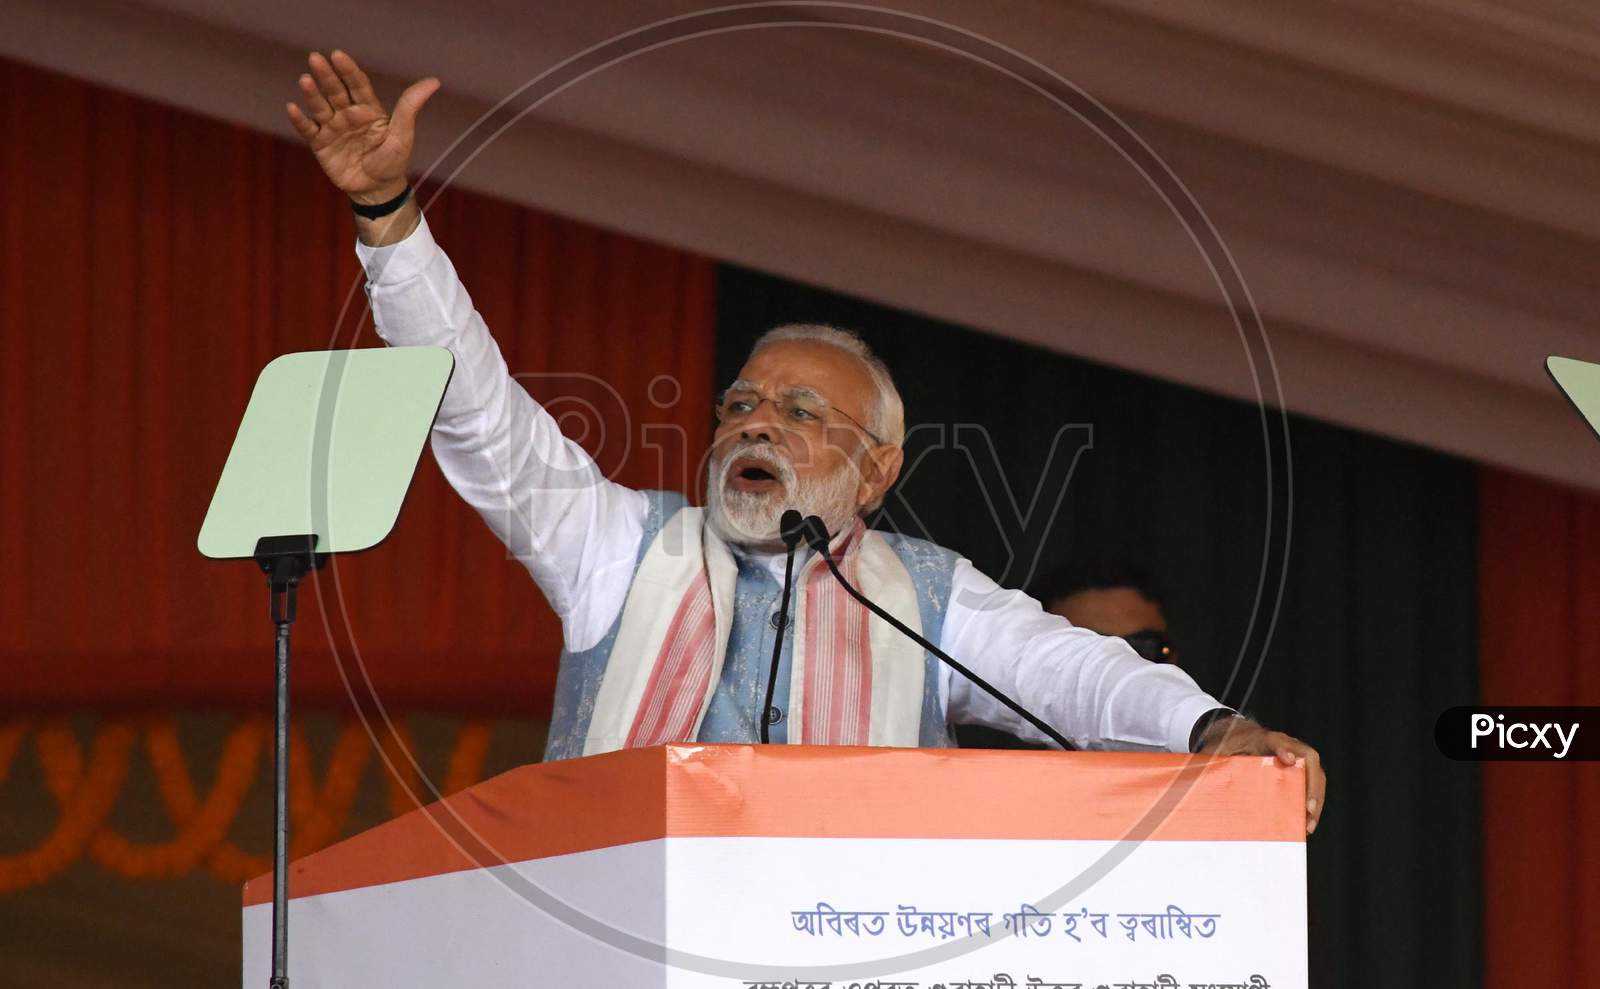 Prime Minister Narendra Modi delivering speech